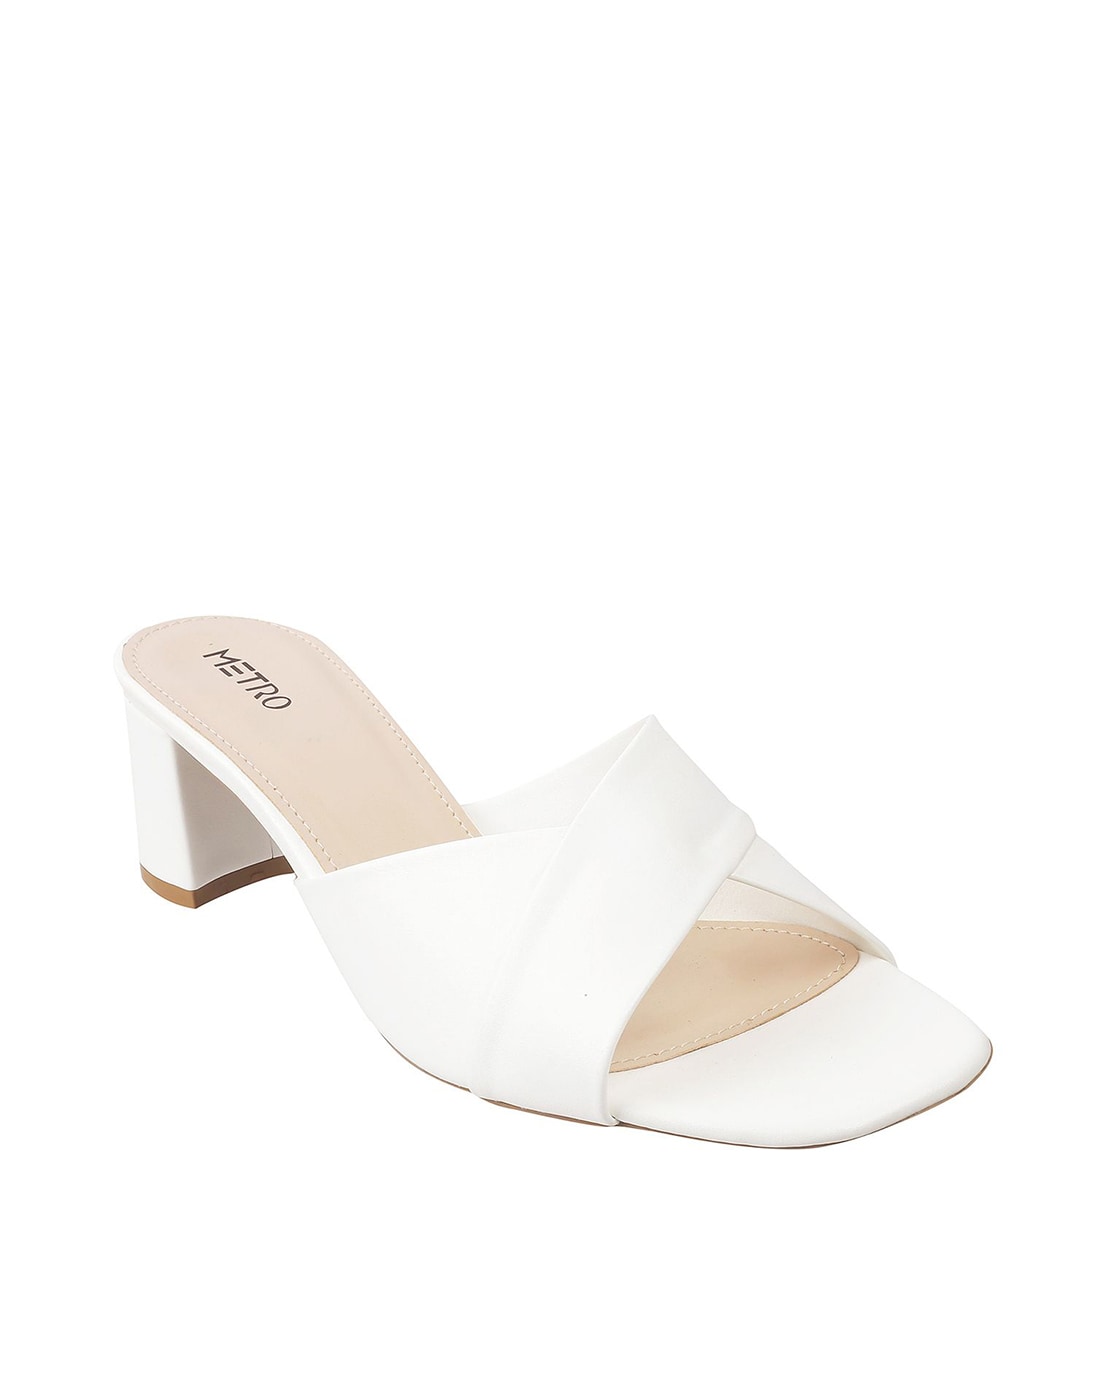 Minima Women's White Dress Sandals | Aldo Shoes